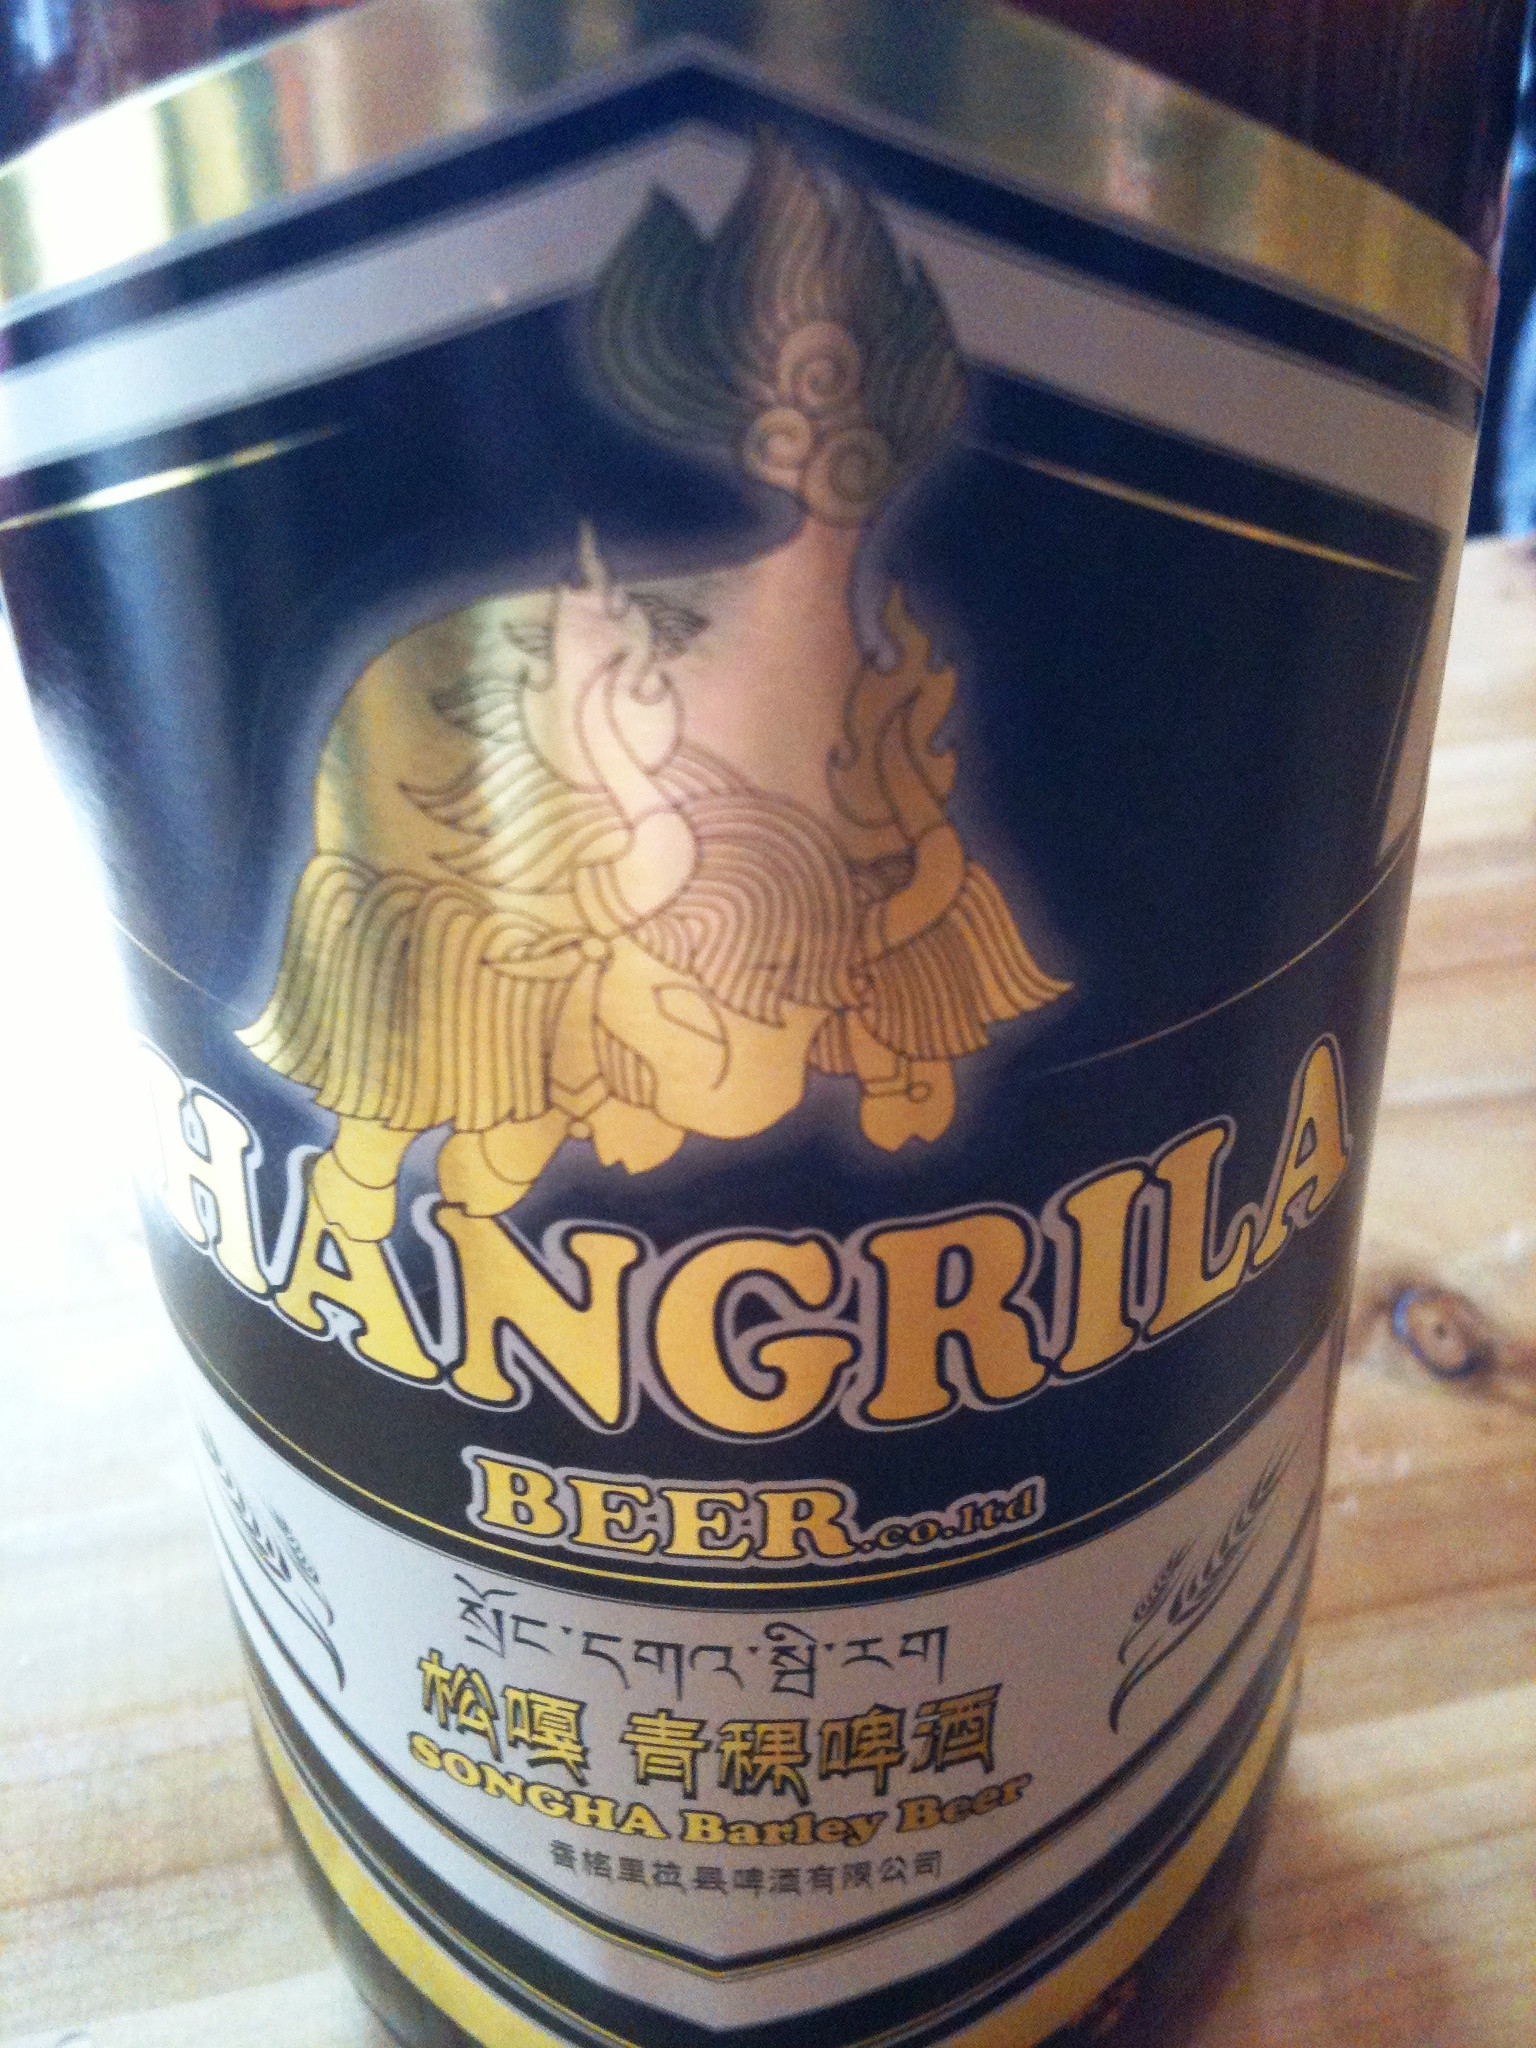 Shangri-la Bier, braut von einem Tibet-Schweizer